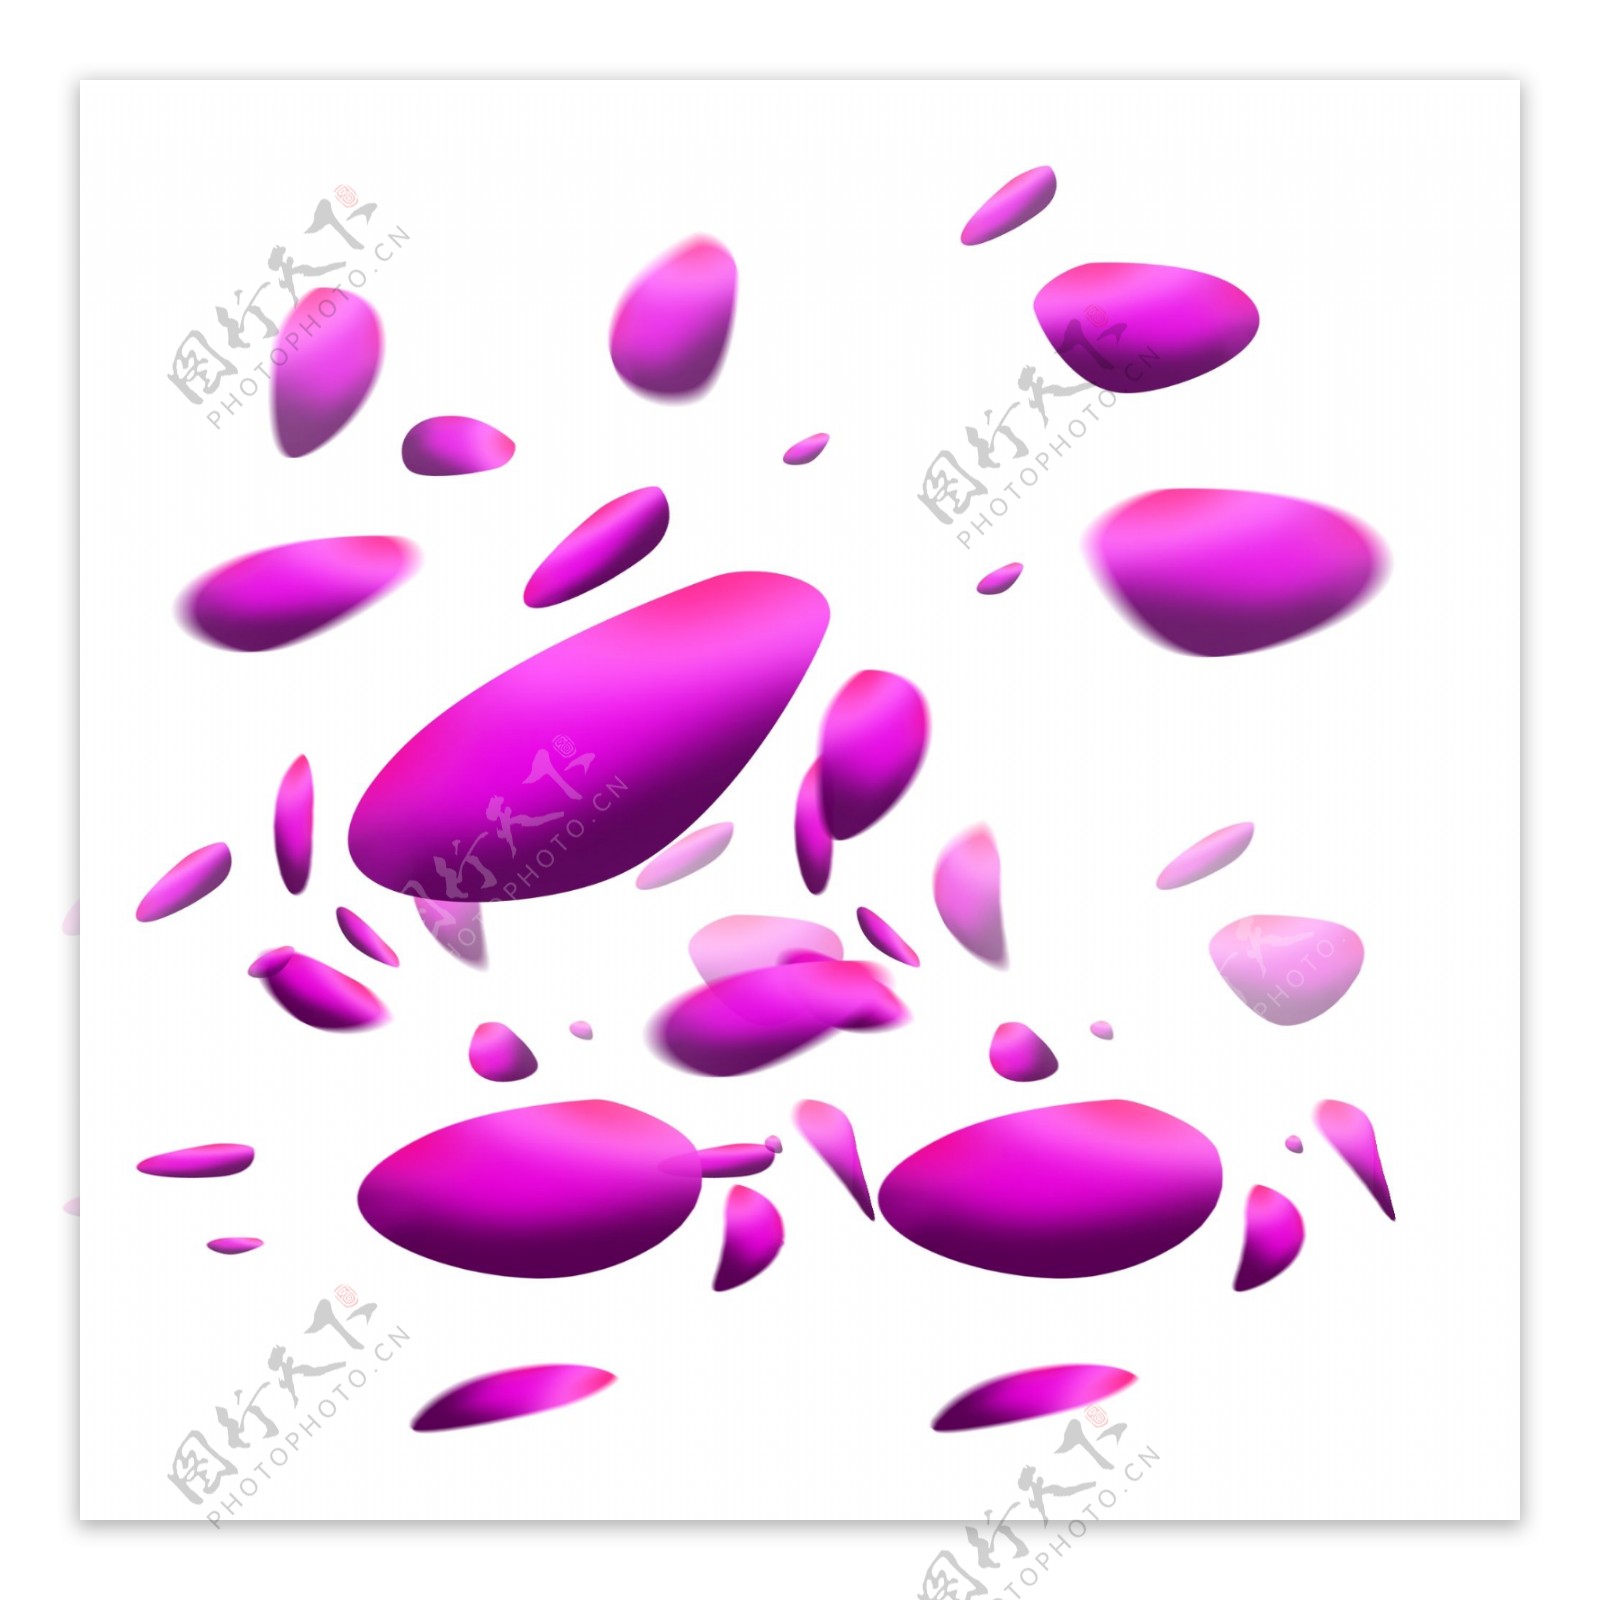 飘落散落的紫色花瓣素材